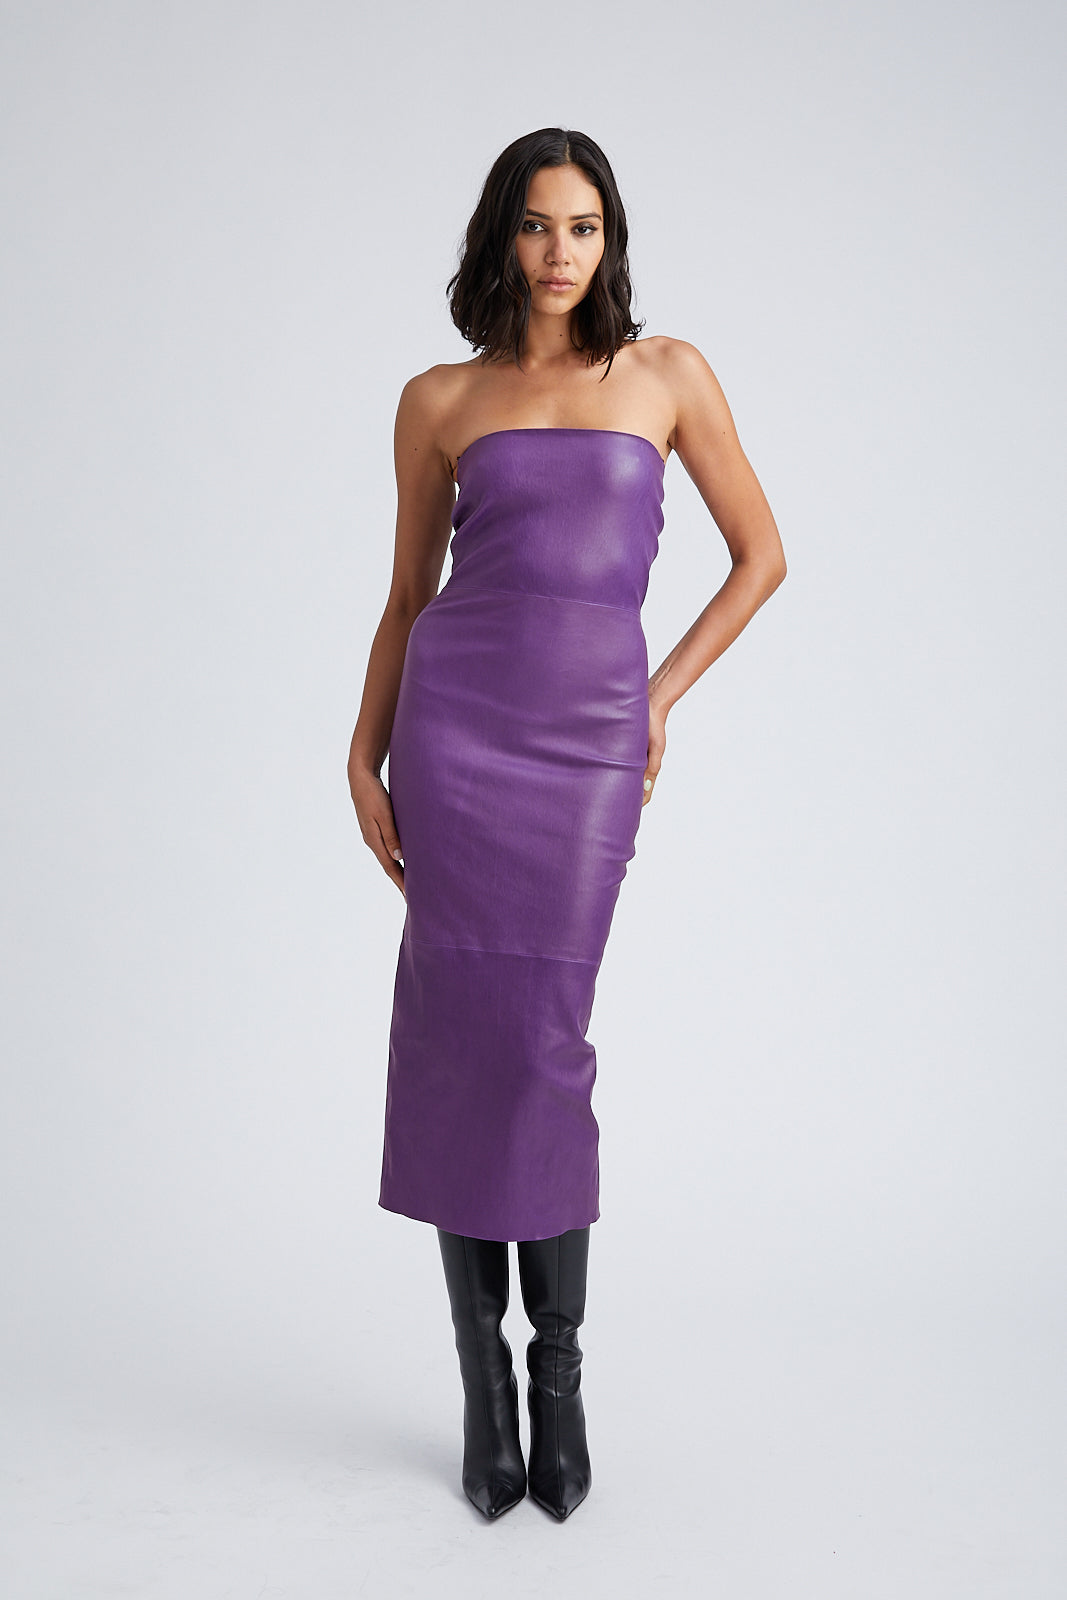 Violet Leather Tube Dress